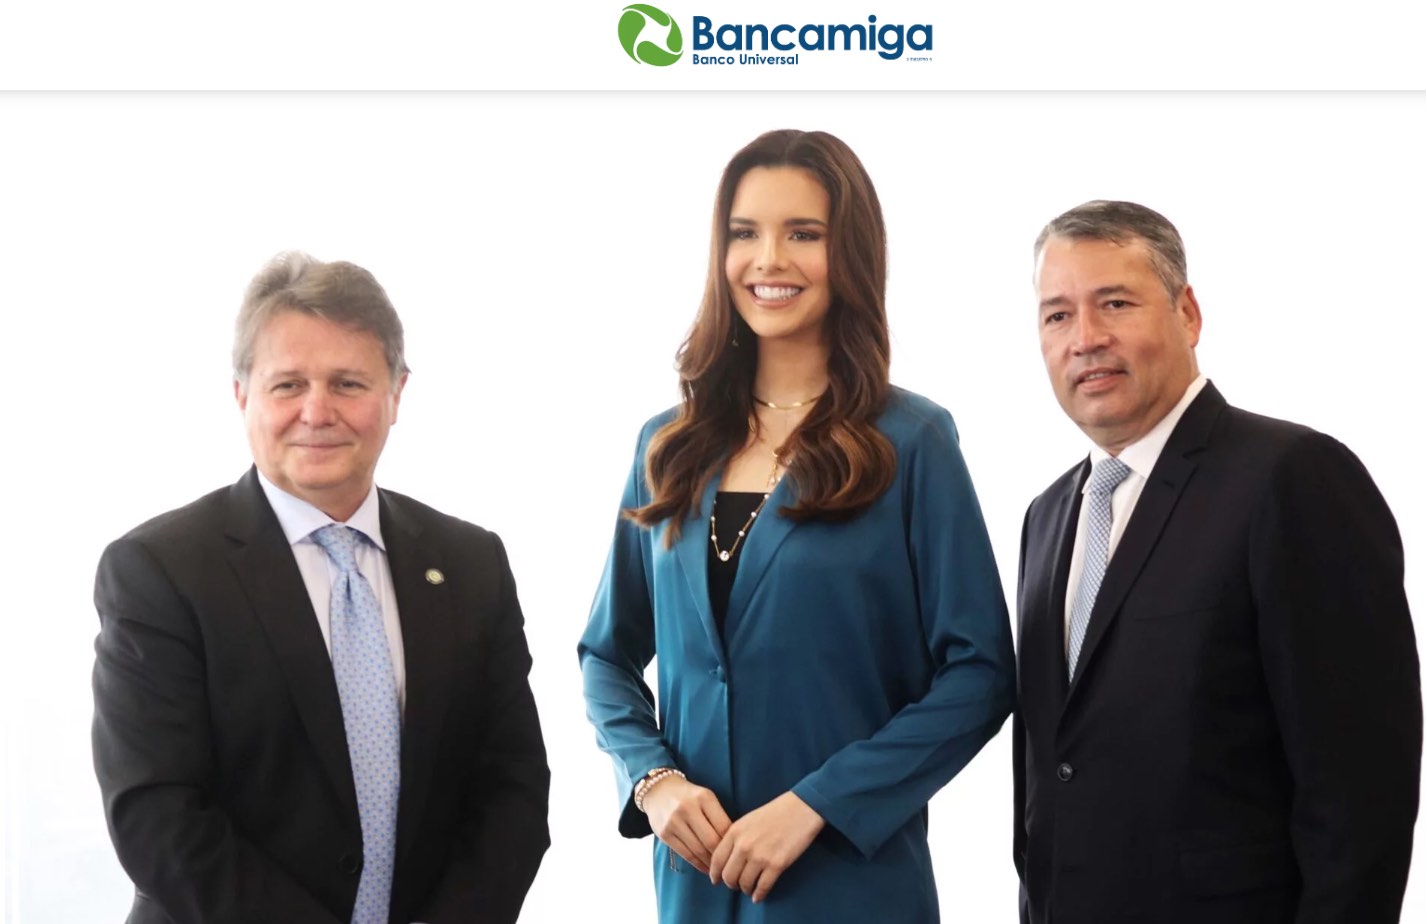 Carmelo de Grazia, Presidente de Bancamiga: Impulsamos el programo “Juntos hacemos Equipo” de Bancamiga